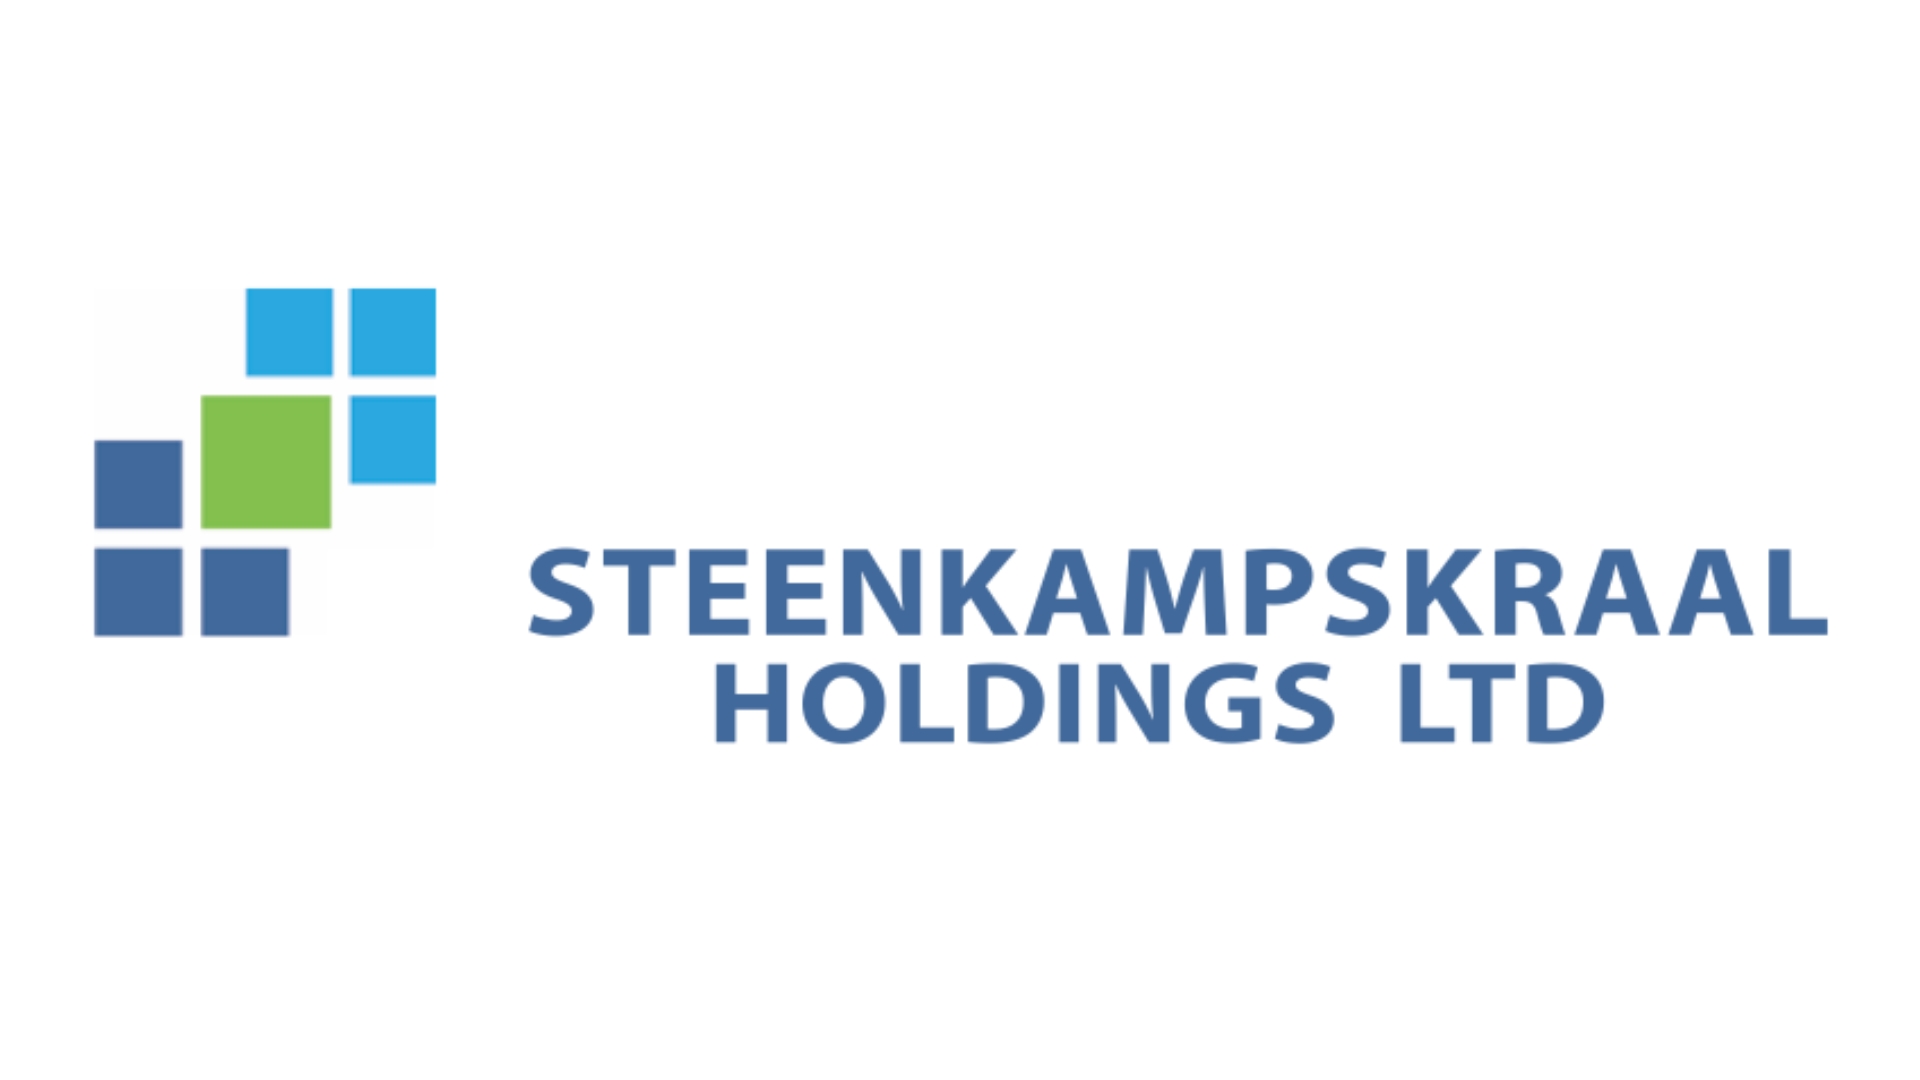 Steenkampskraal Holding Ltd